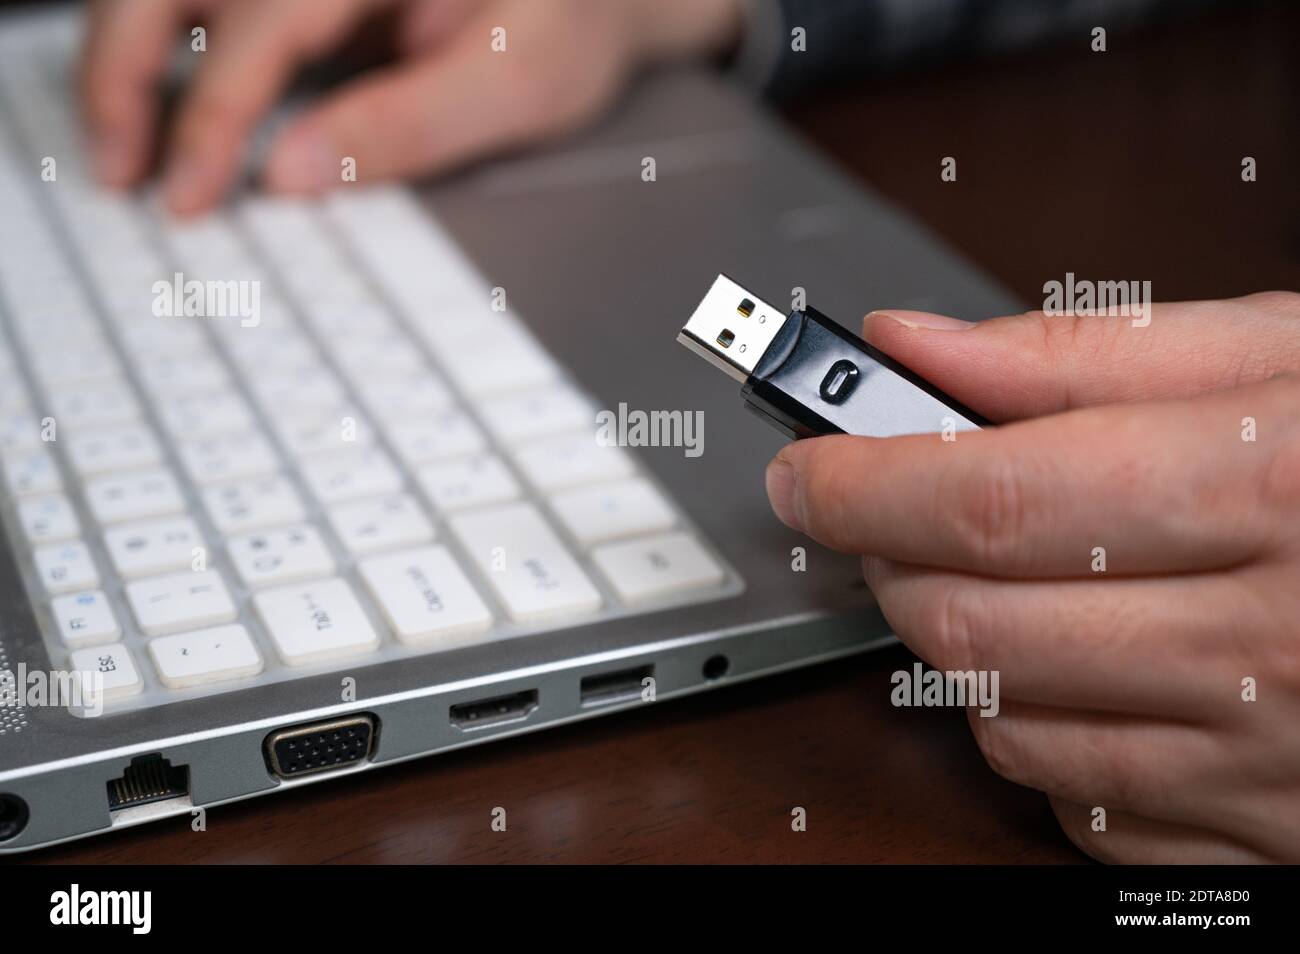 La main d'une personne utilisant une clé USB. Concept de protection des informations cybernétiques. Mise au point de sélection USB. Banque D'Images